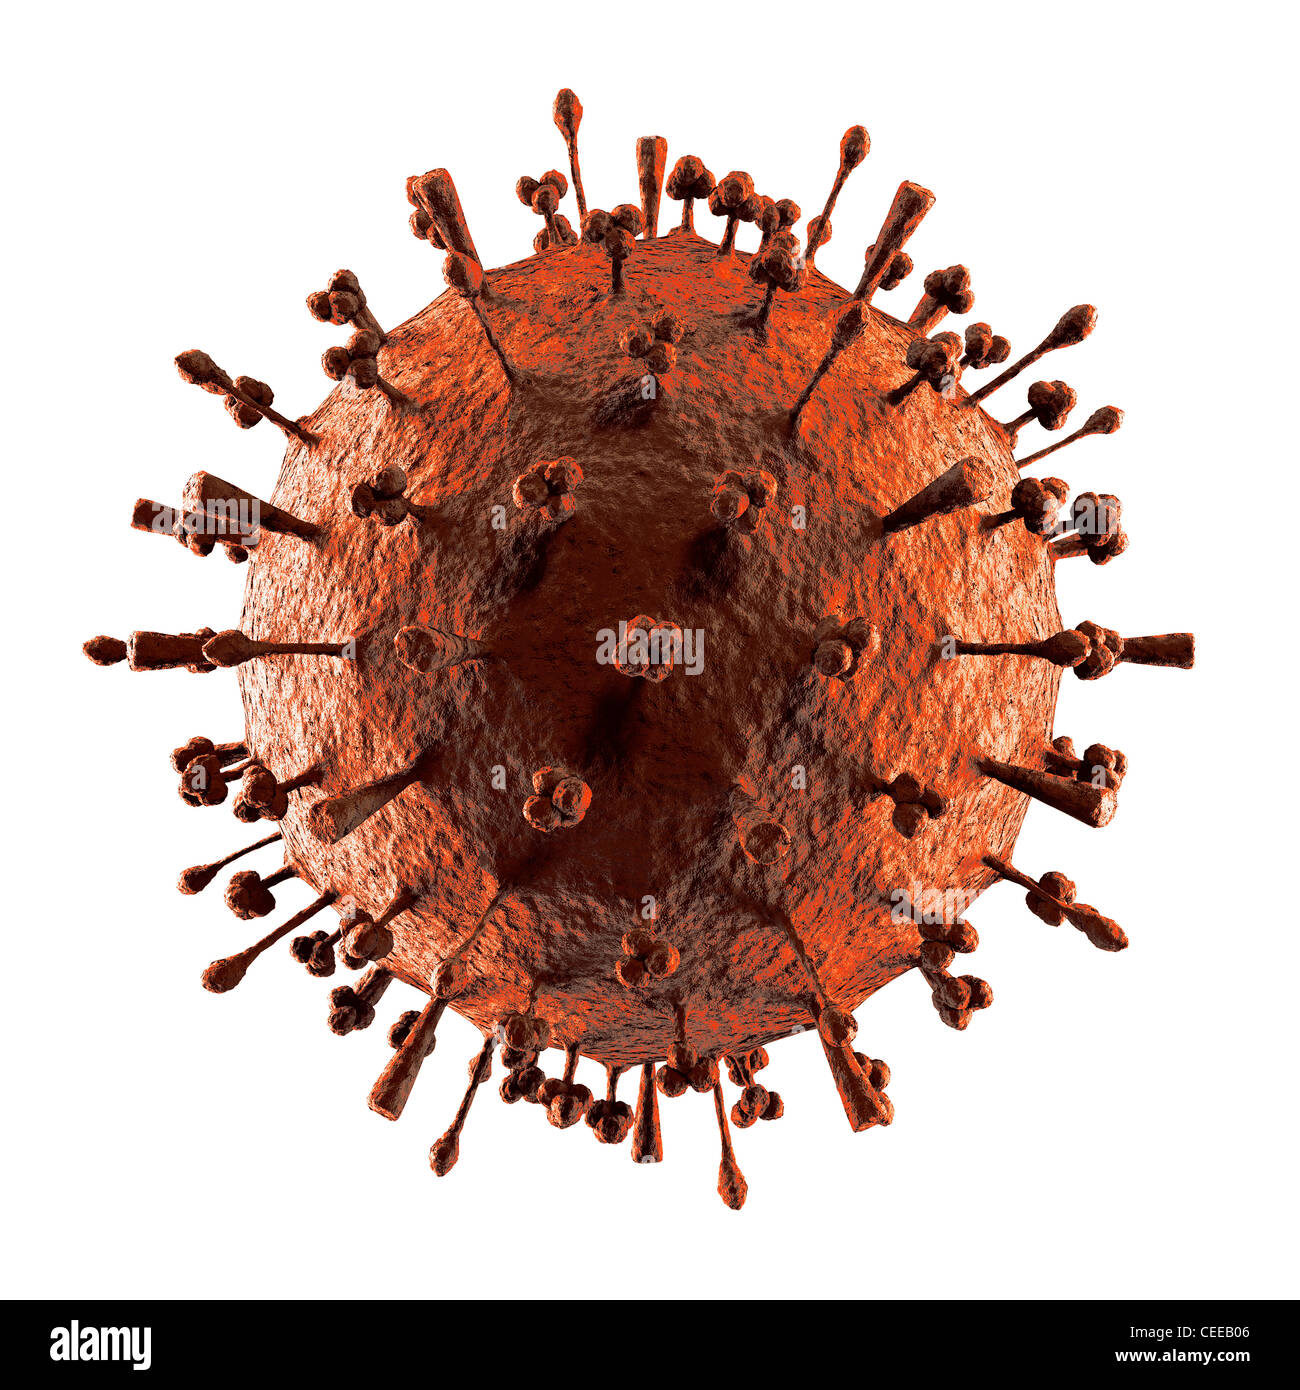 Le virus de la grippe H1N1 virus influenza A (H5N1 virion particule. Grippe aviaire, grippe porcine.structure de particules 3D illustration isolated on white Banque D'Images